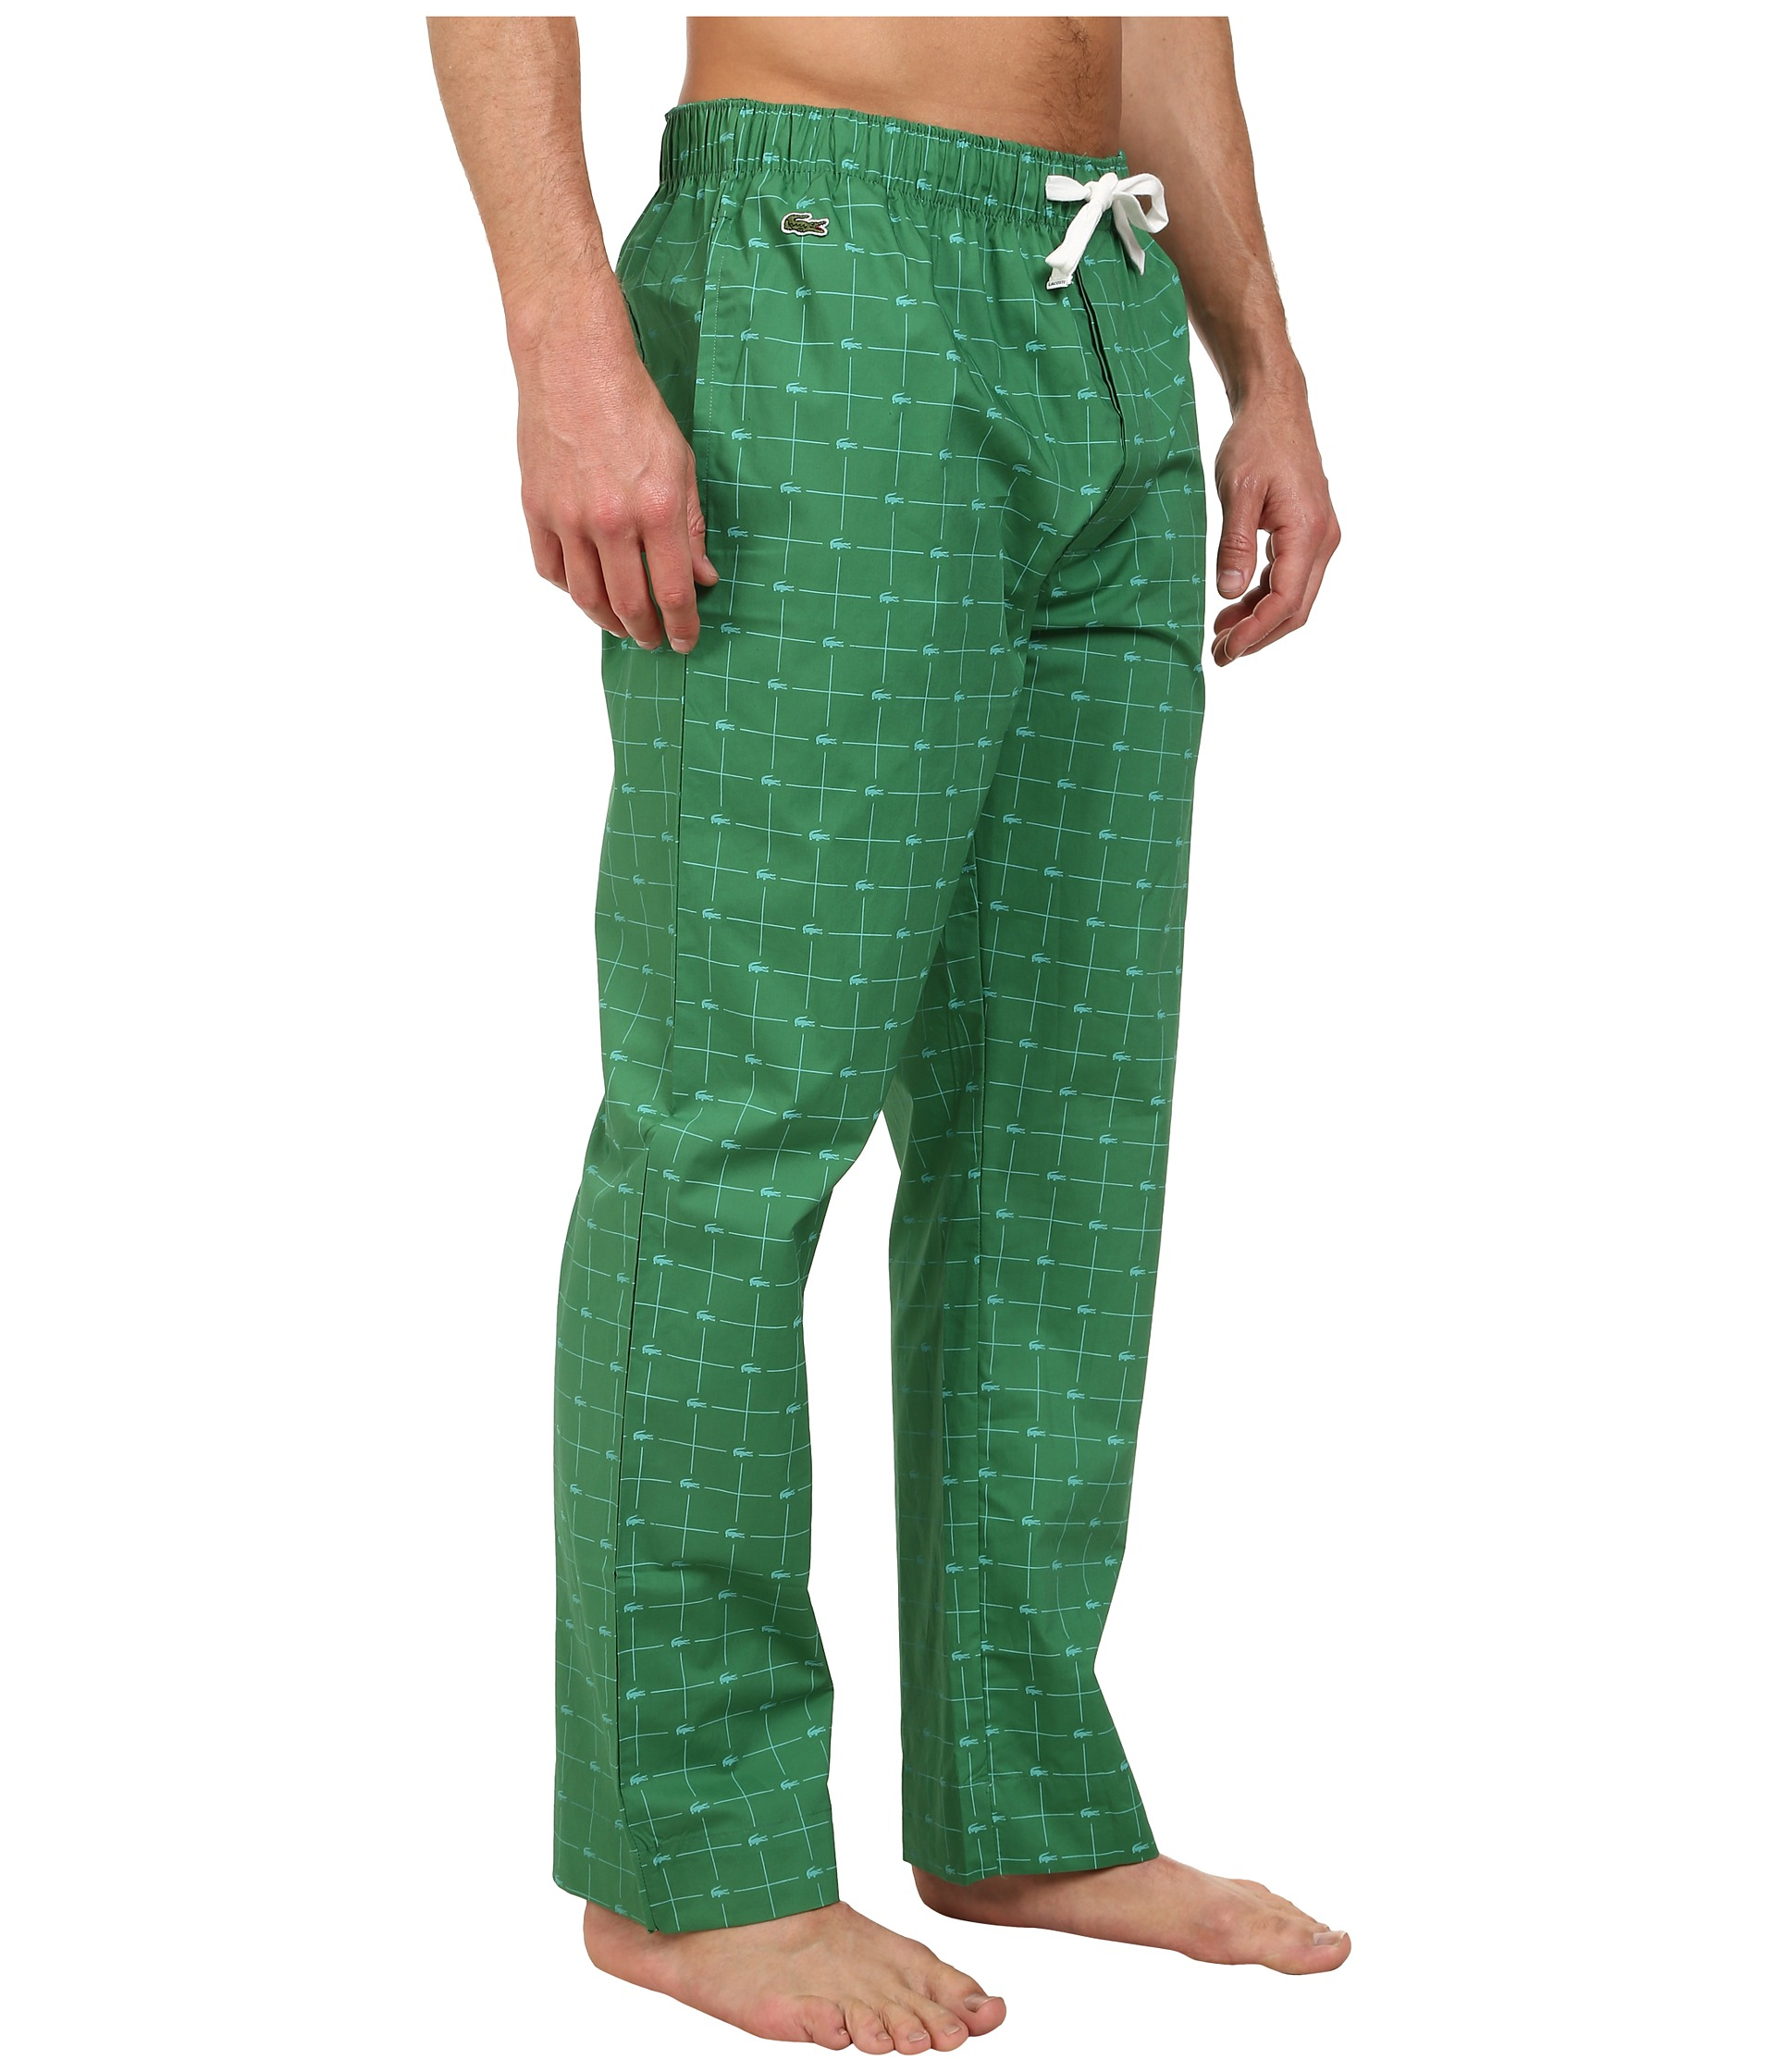 Lacoste Baseline Croc Pants in Green for Men - Lyst